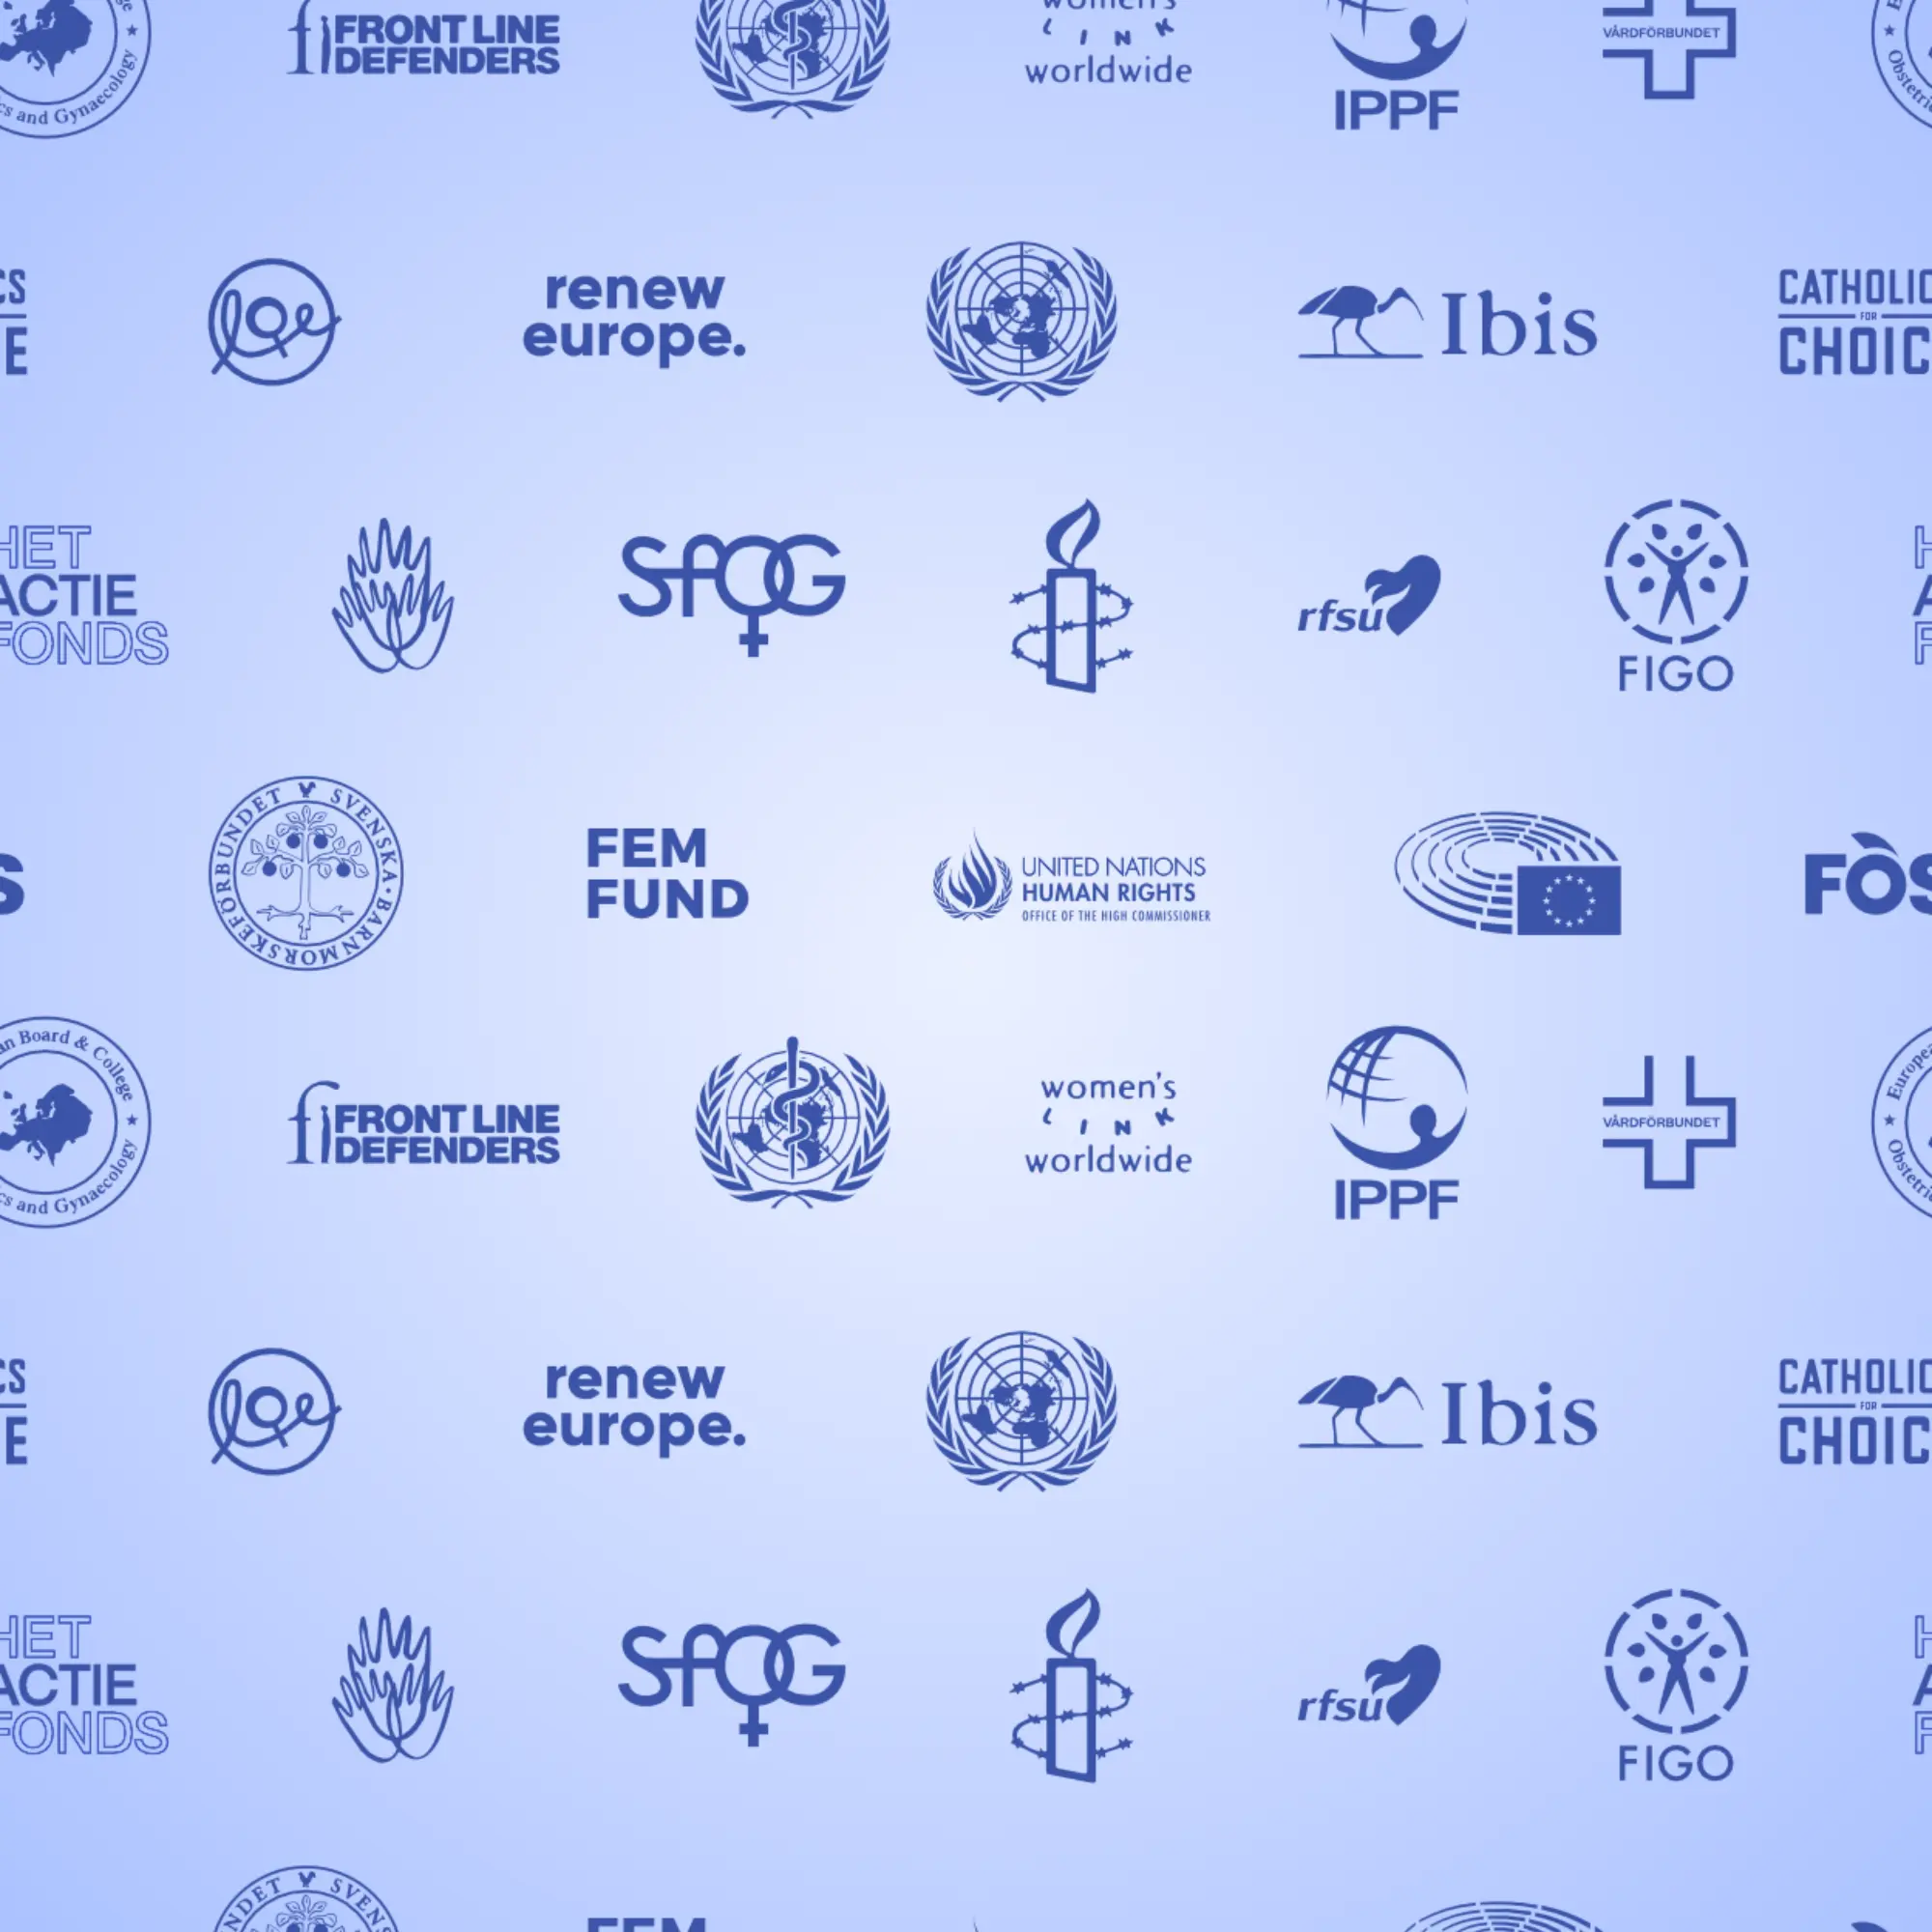 Logotypy organizacji feministycznych, aborcyjnych i europejskich.